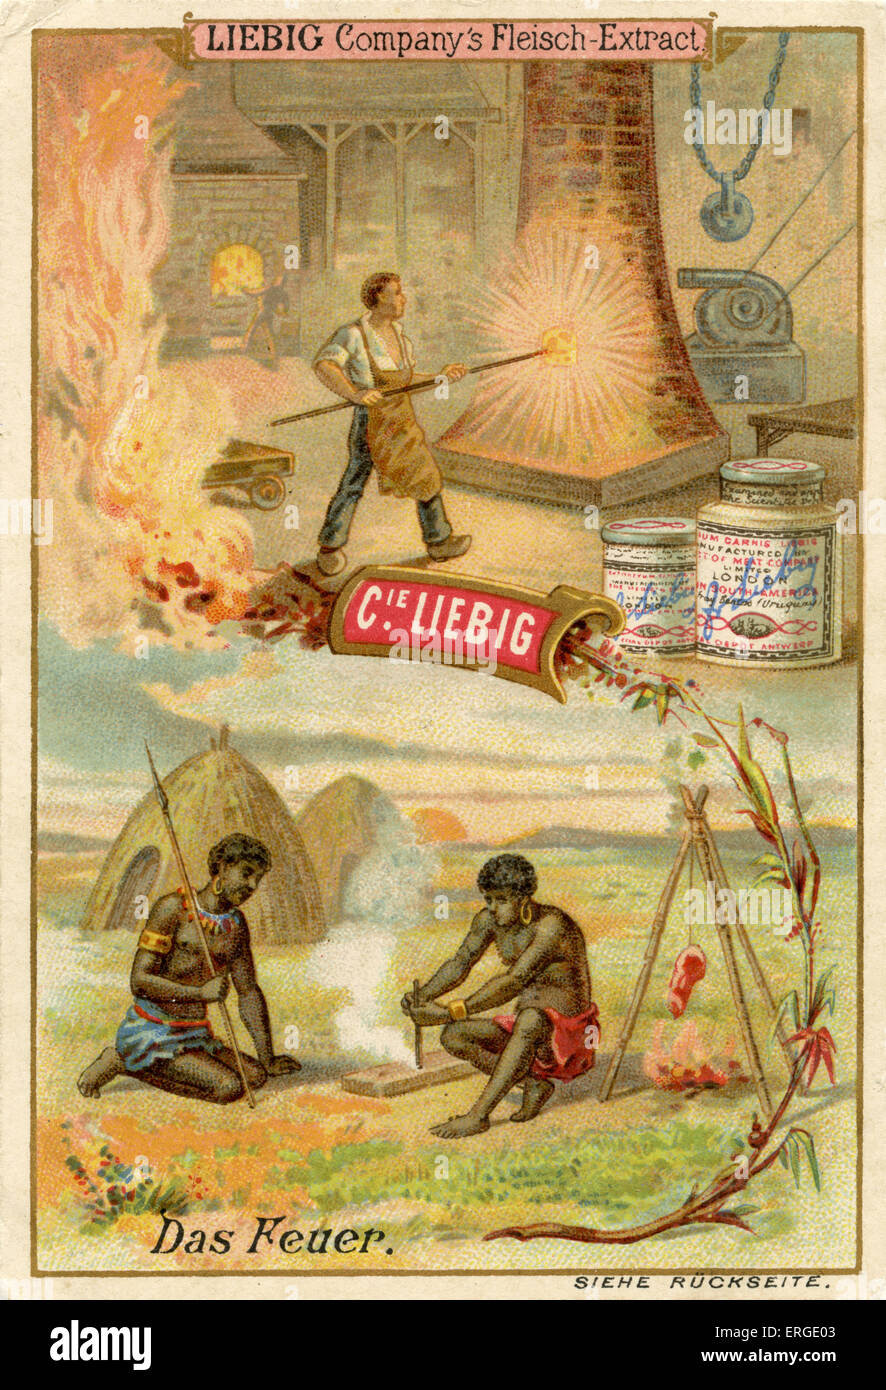 Incendie ('Das Feuer") - cartes à collectionner Liebig Company, série ressources naturelles. Publié 1892. Banque D'Images